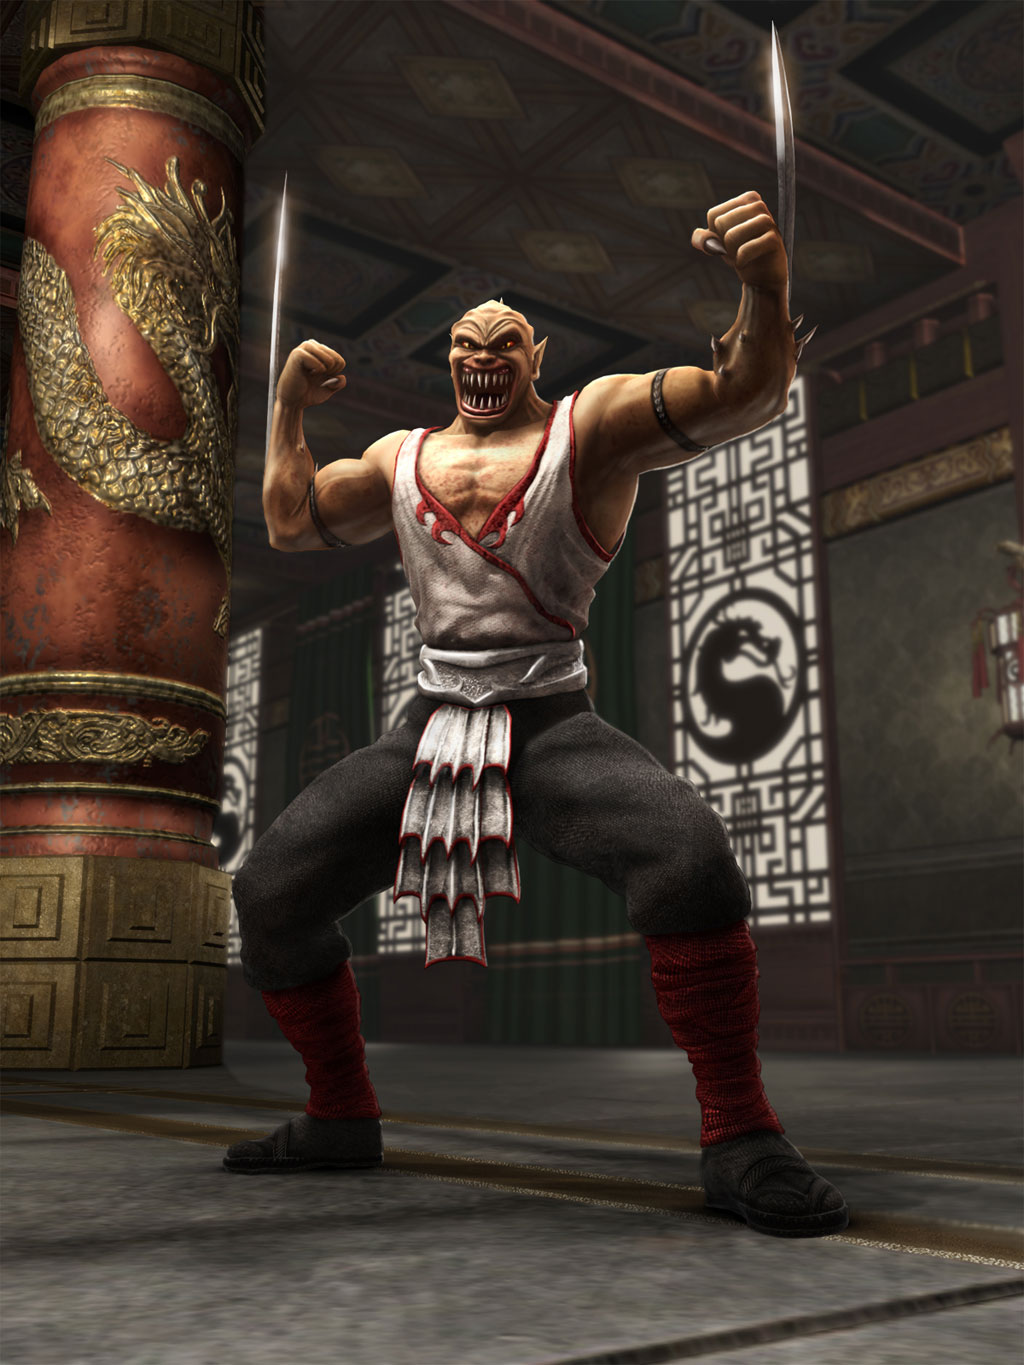 MKWarehouse: Mortal Kombat 3: Shang Tsung